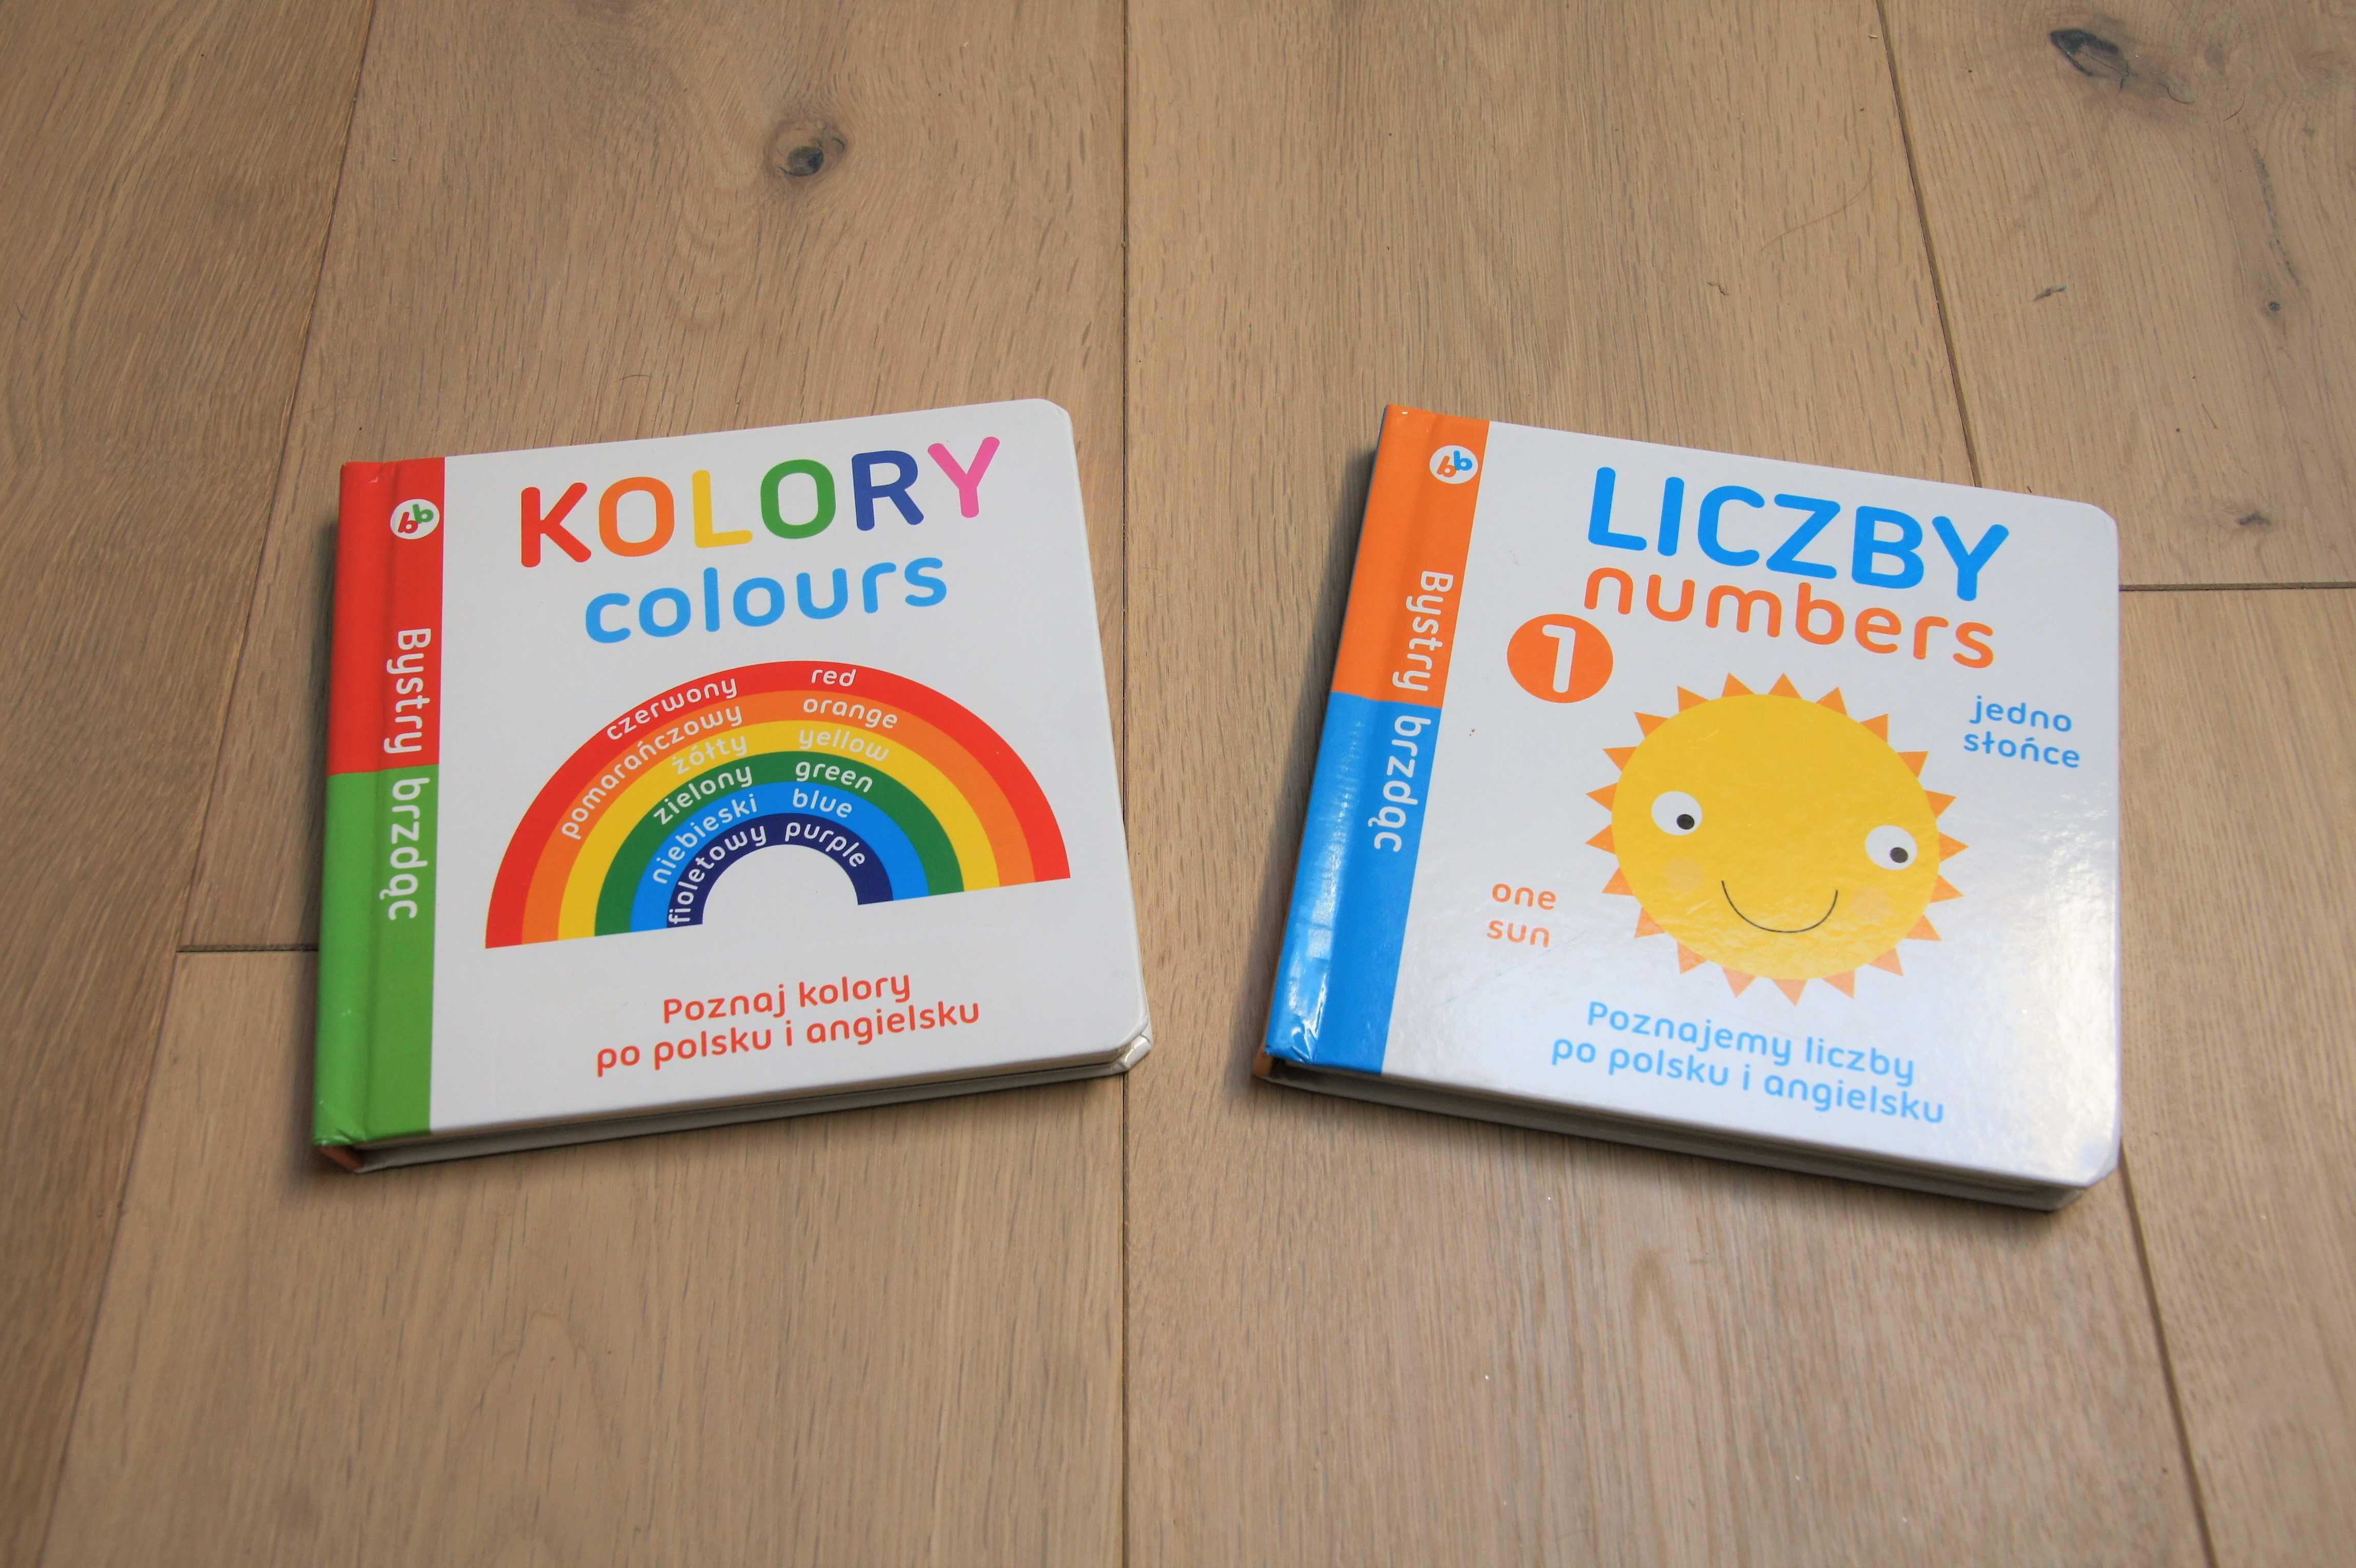 Dwie książeczki z serii Bystry brzdąc:
kolory colours
liczby numbers